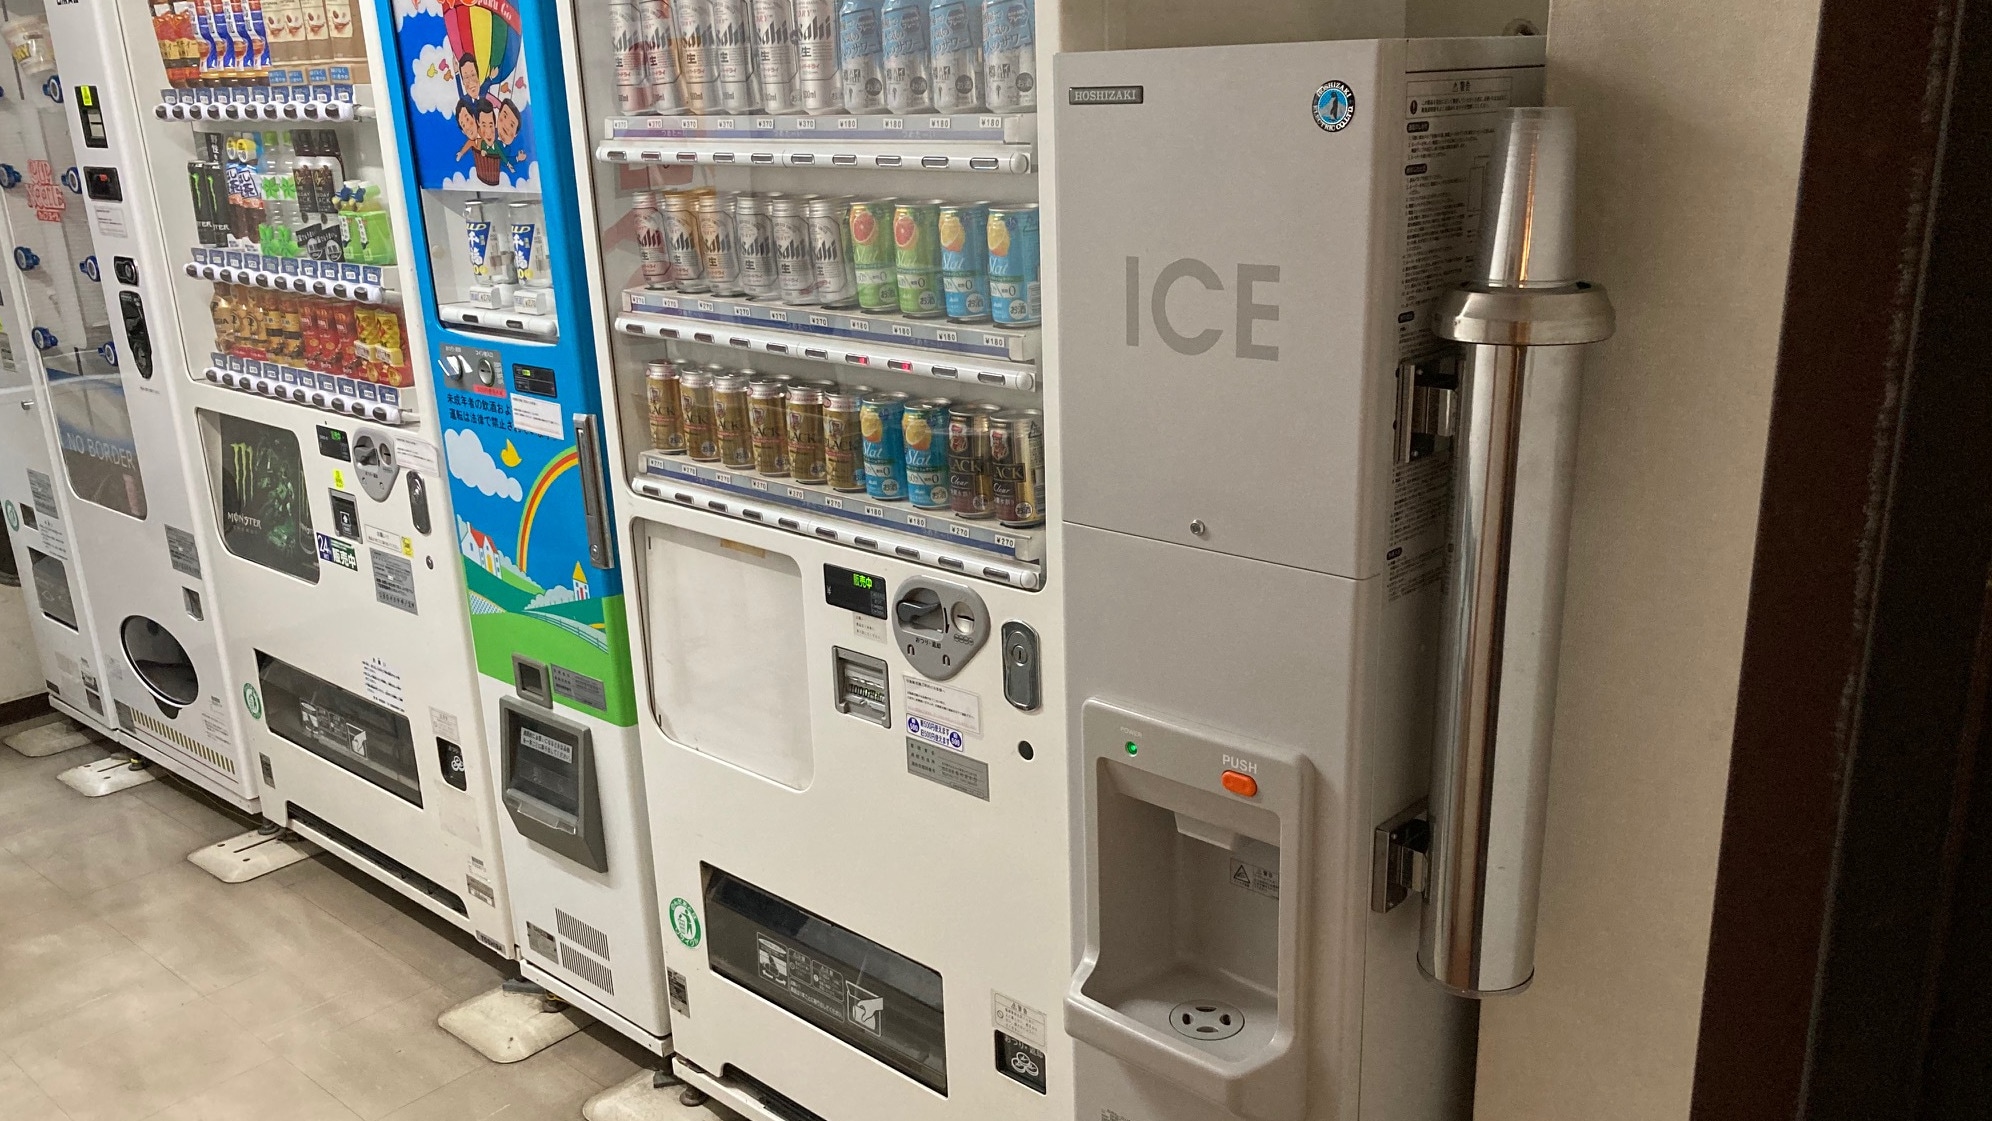 Vending machine and ice machine